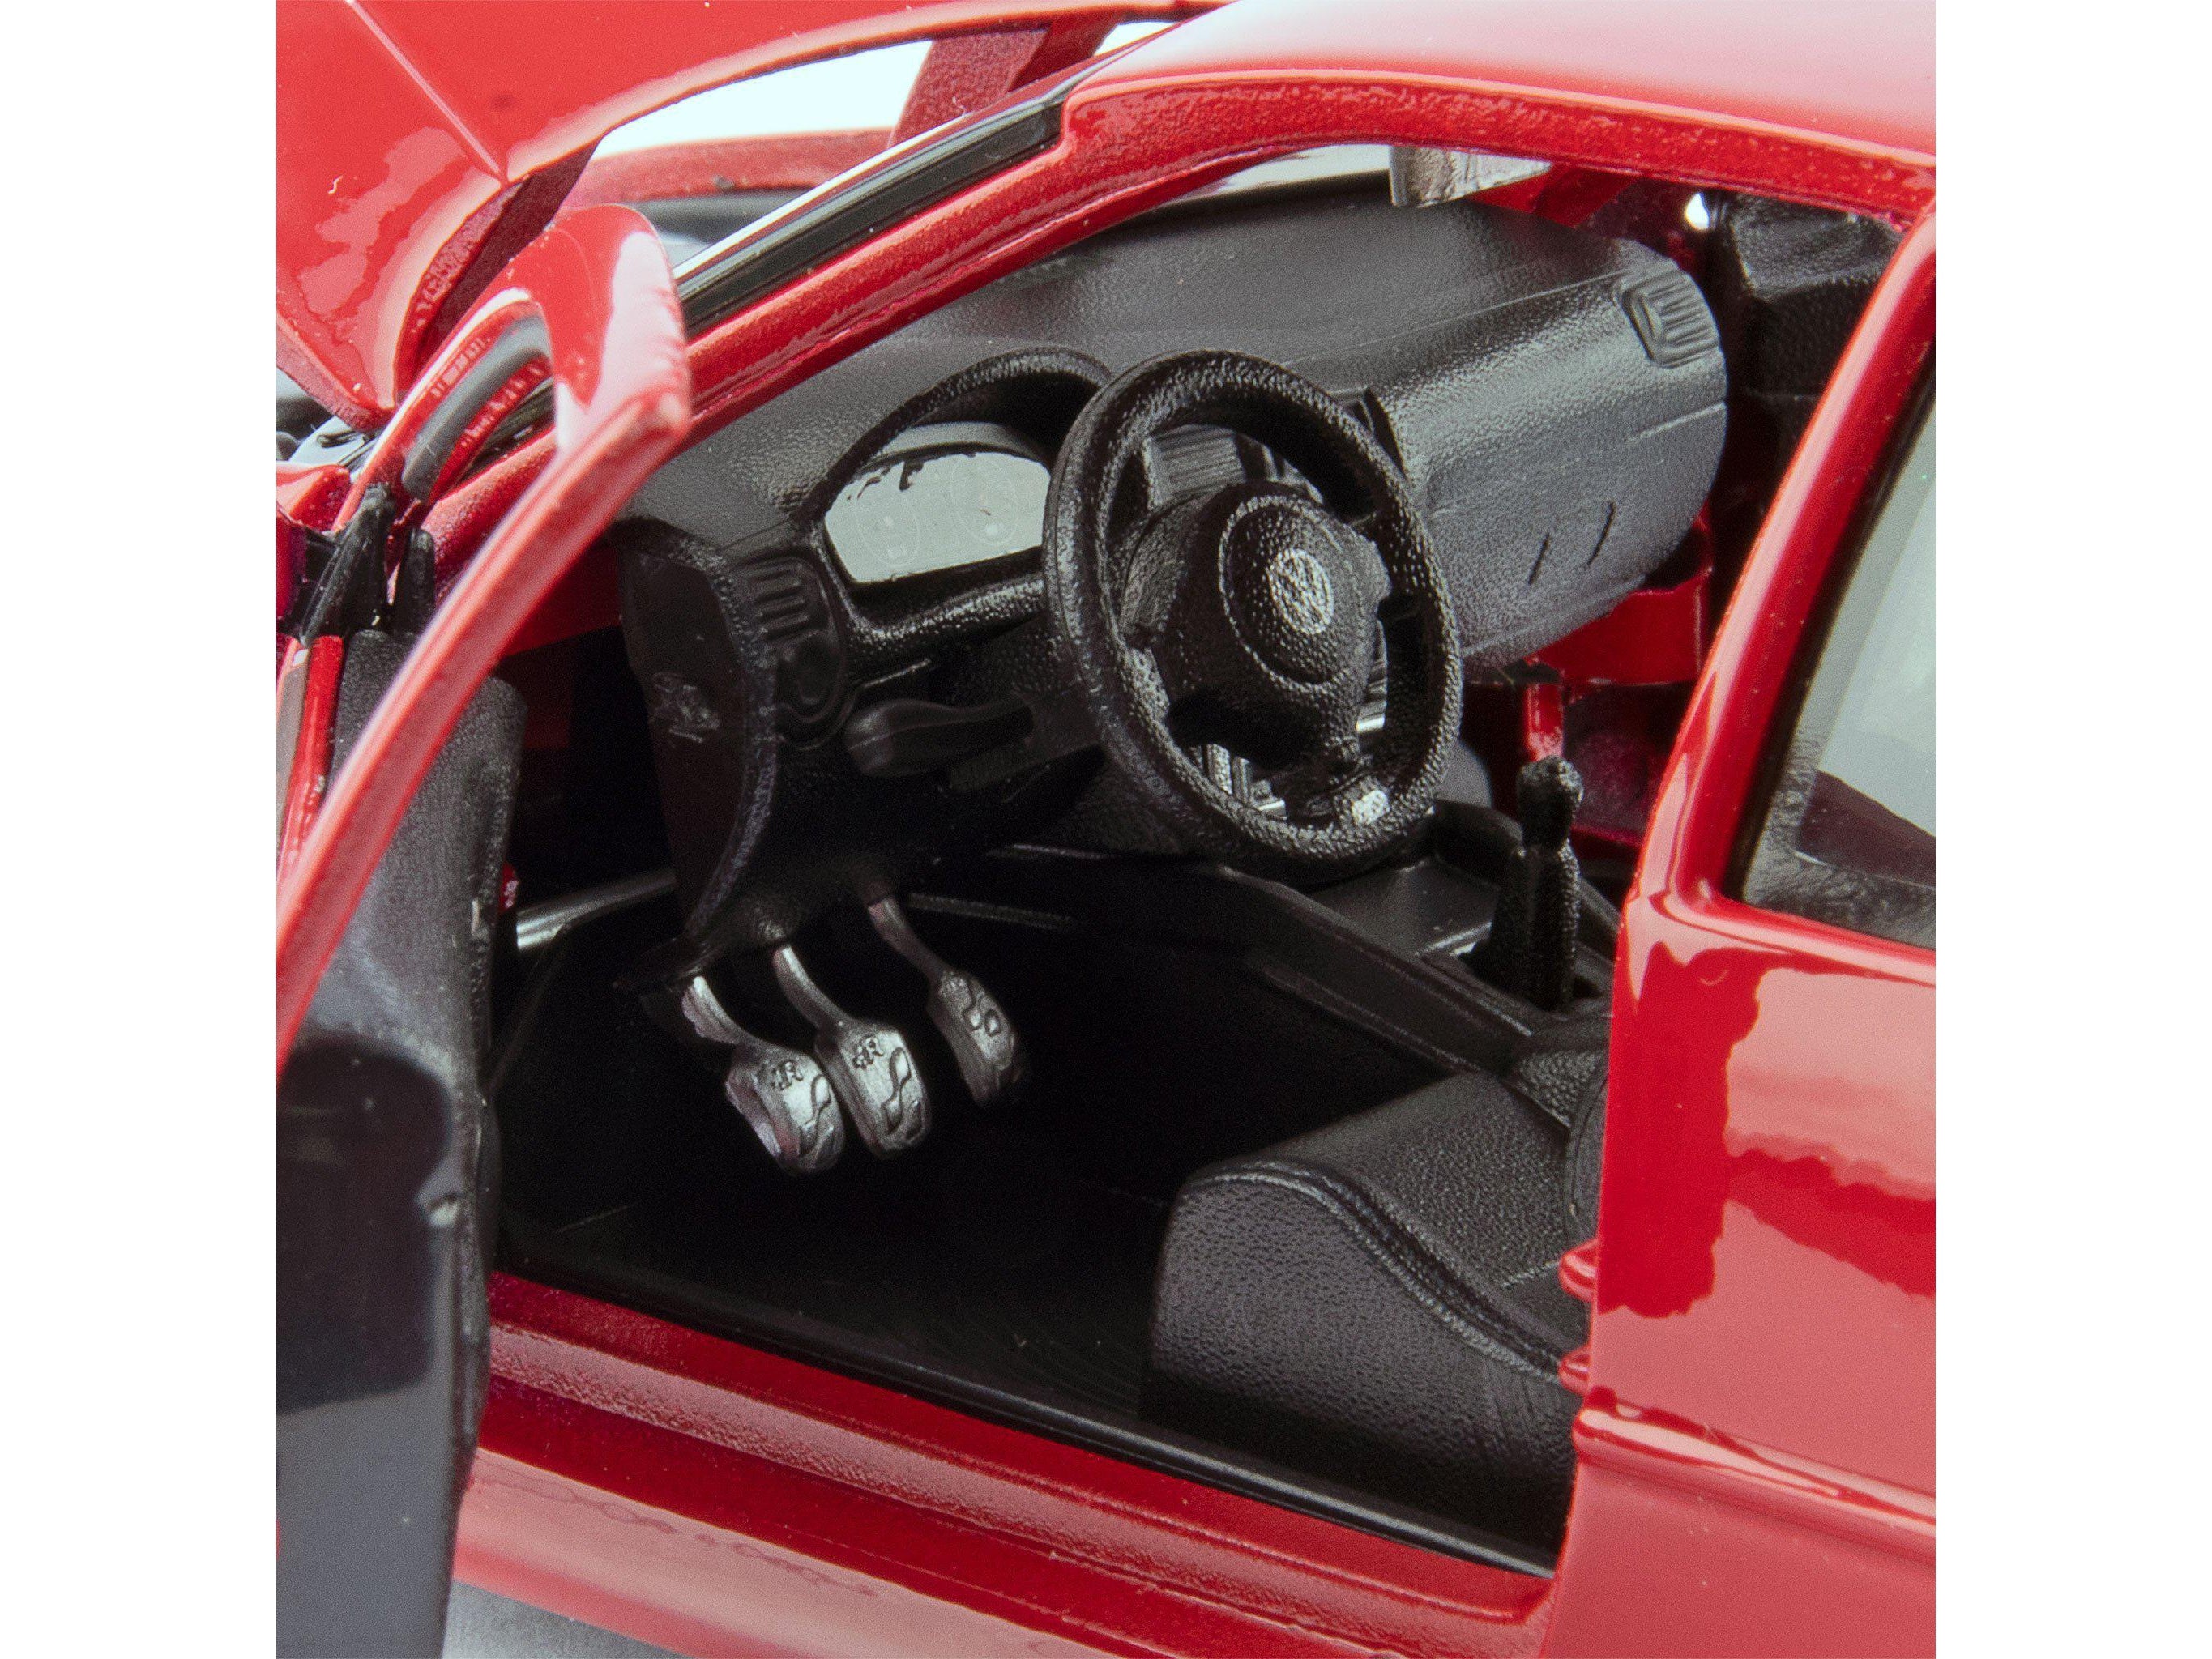 Volkswagen Golf R32 Diecast Model Car red - 1:24 Scale-Maisto-Diecast Model Centre